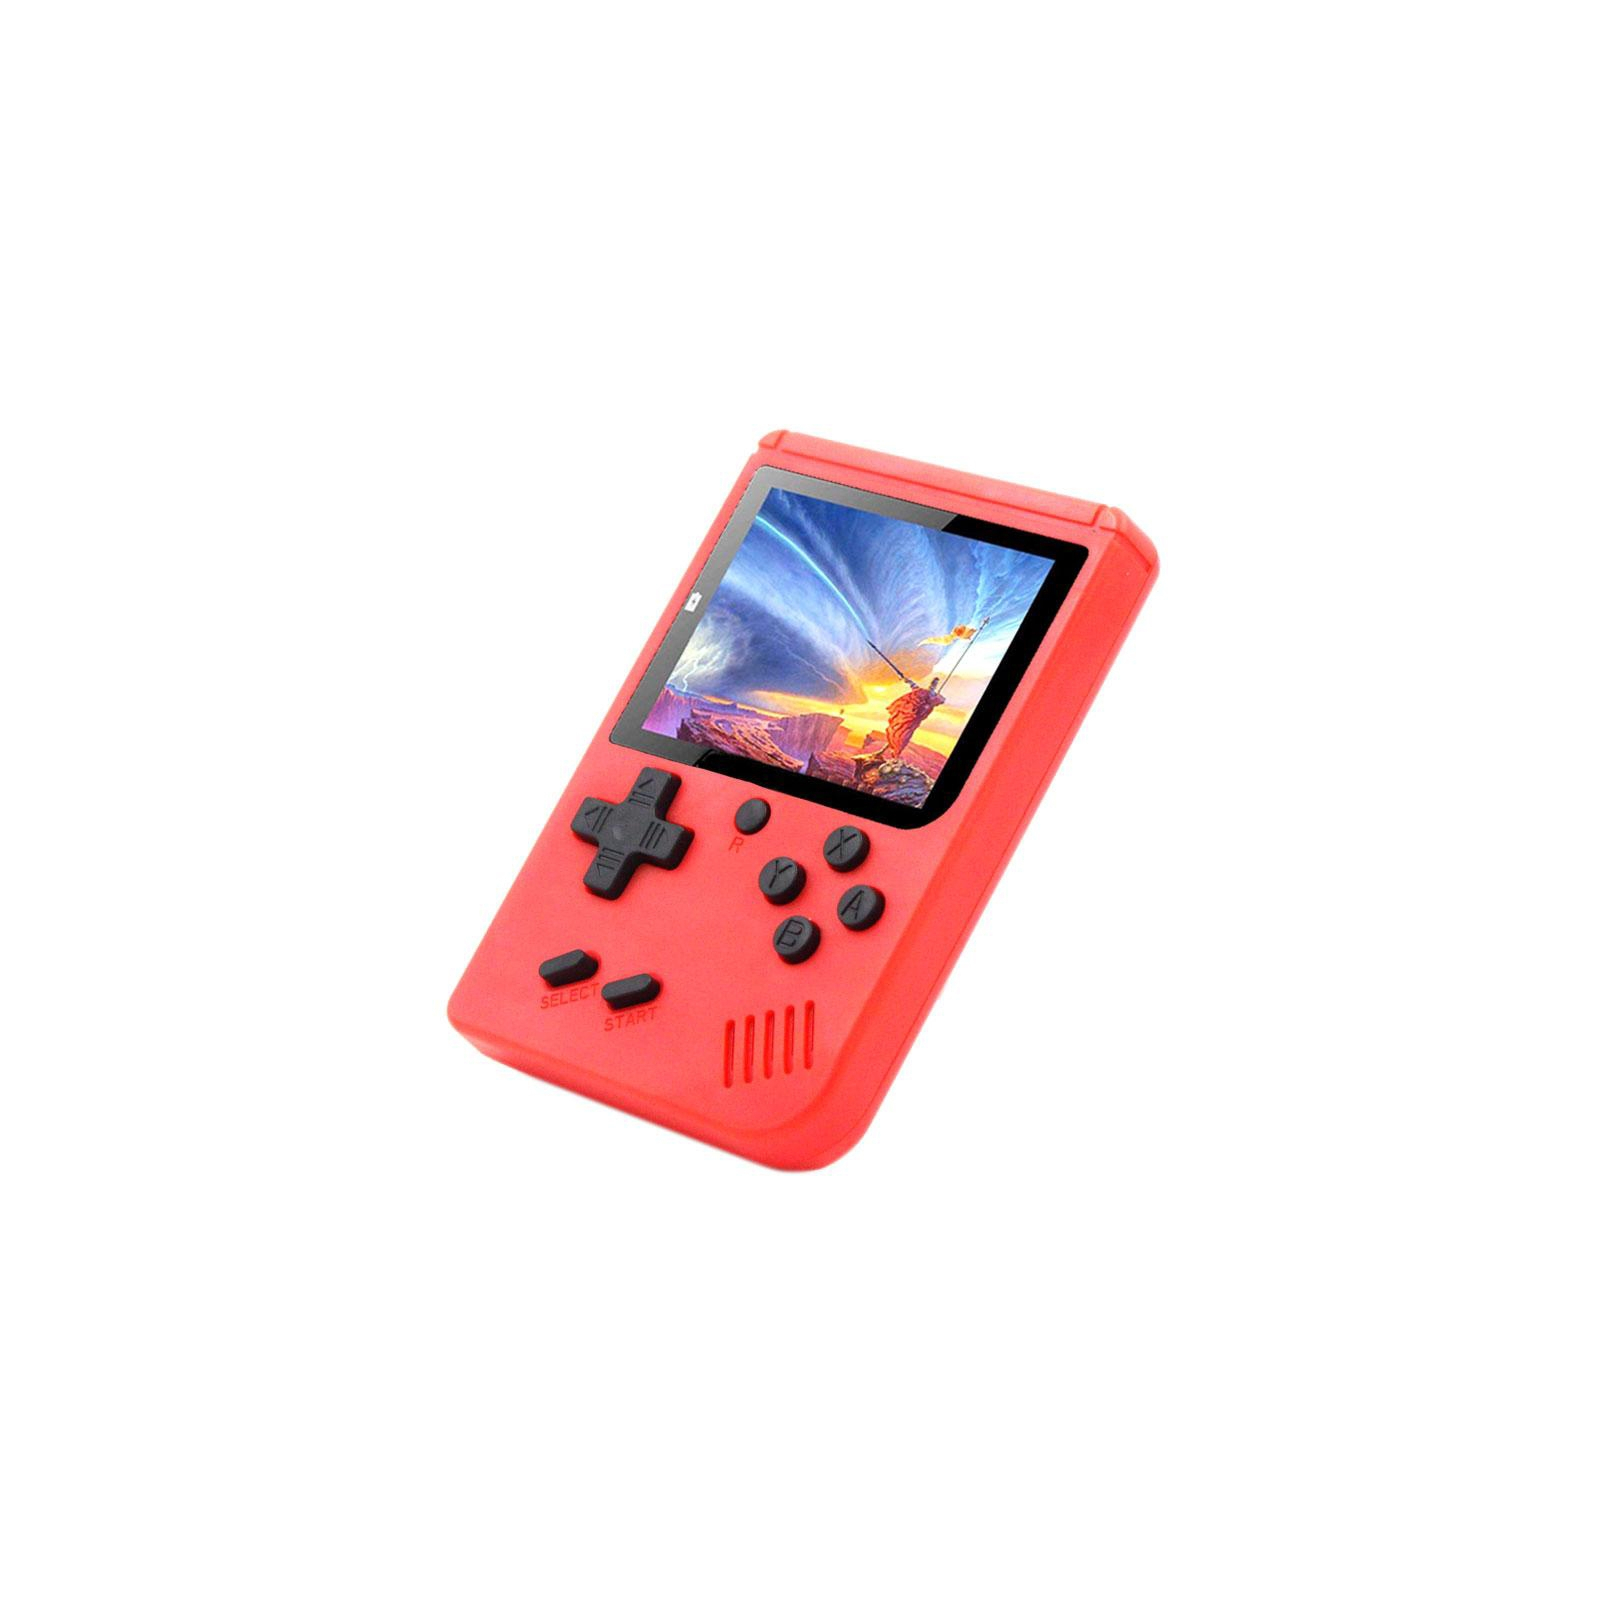 Интерактивная игрушка XoKo игровая консоль Hey Boy красная (XOKO НB-RD)